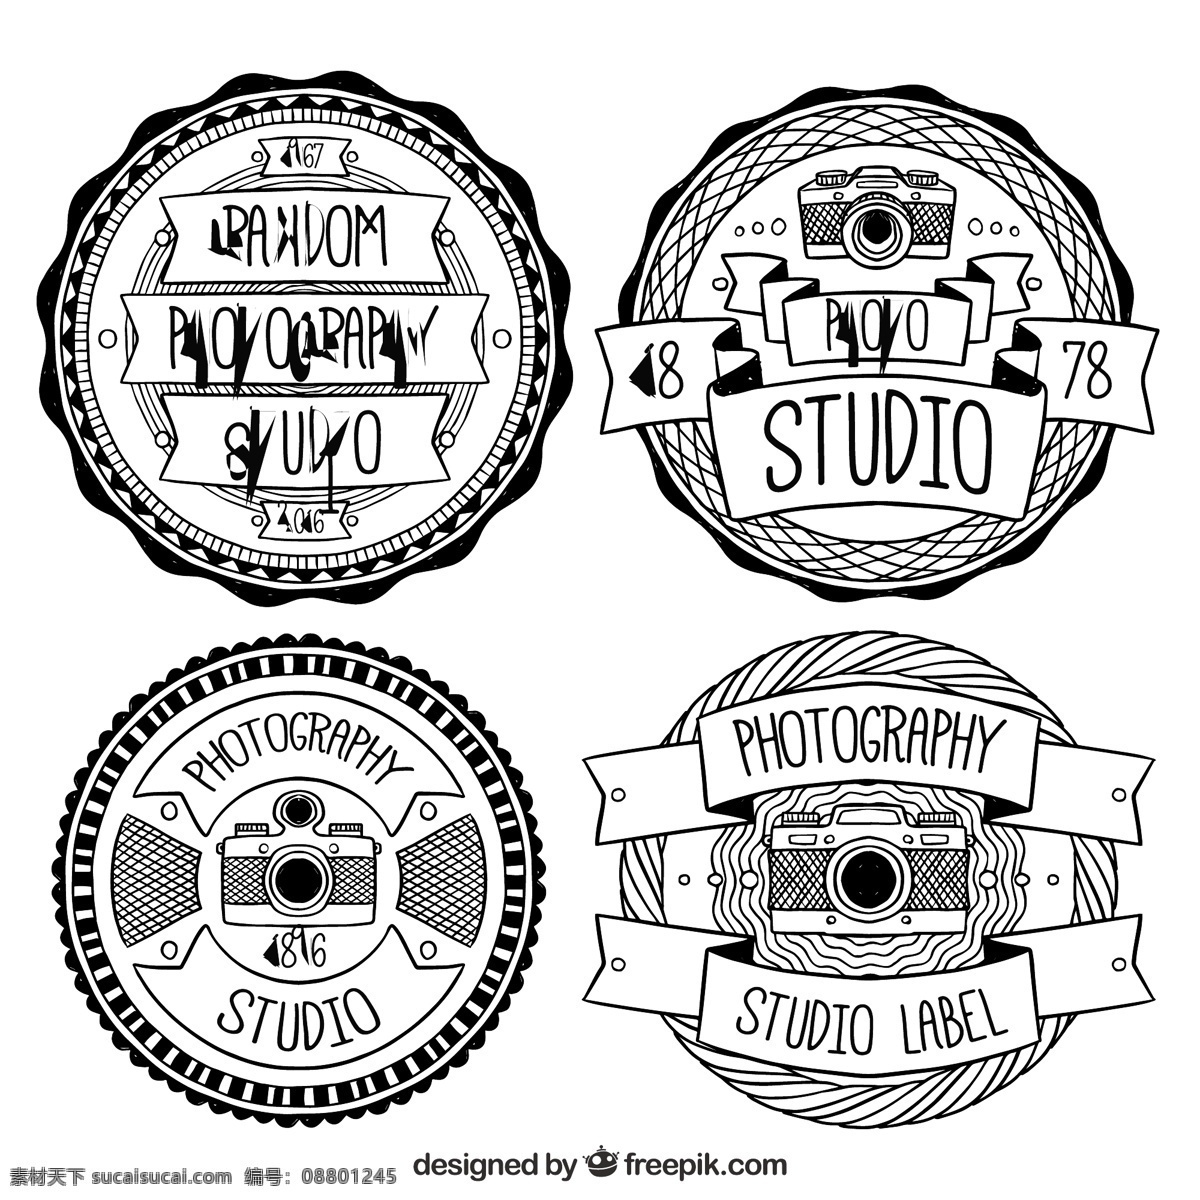 复古 标 志在 黑白摄影 工作室 标志 年份 业务 相机 技术 偏光片 复古图案 照片 艺术 黑色 企业 公司 品牌 摄影师 企业形象 白